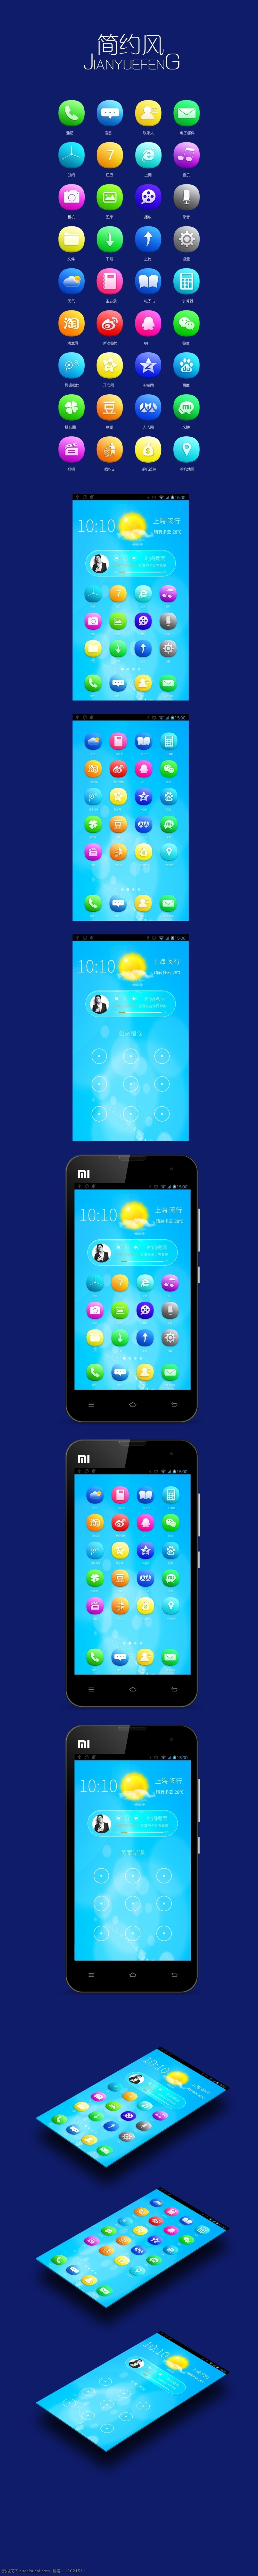 简约 风 手机 app 图标 瀑布 流 简约风 蓝色 icon设计 效果图 ui设计 平面 扁平化 青色 天蓝色